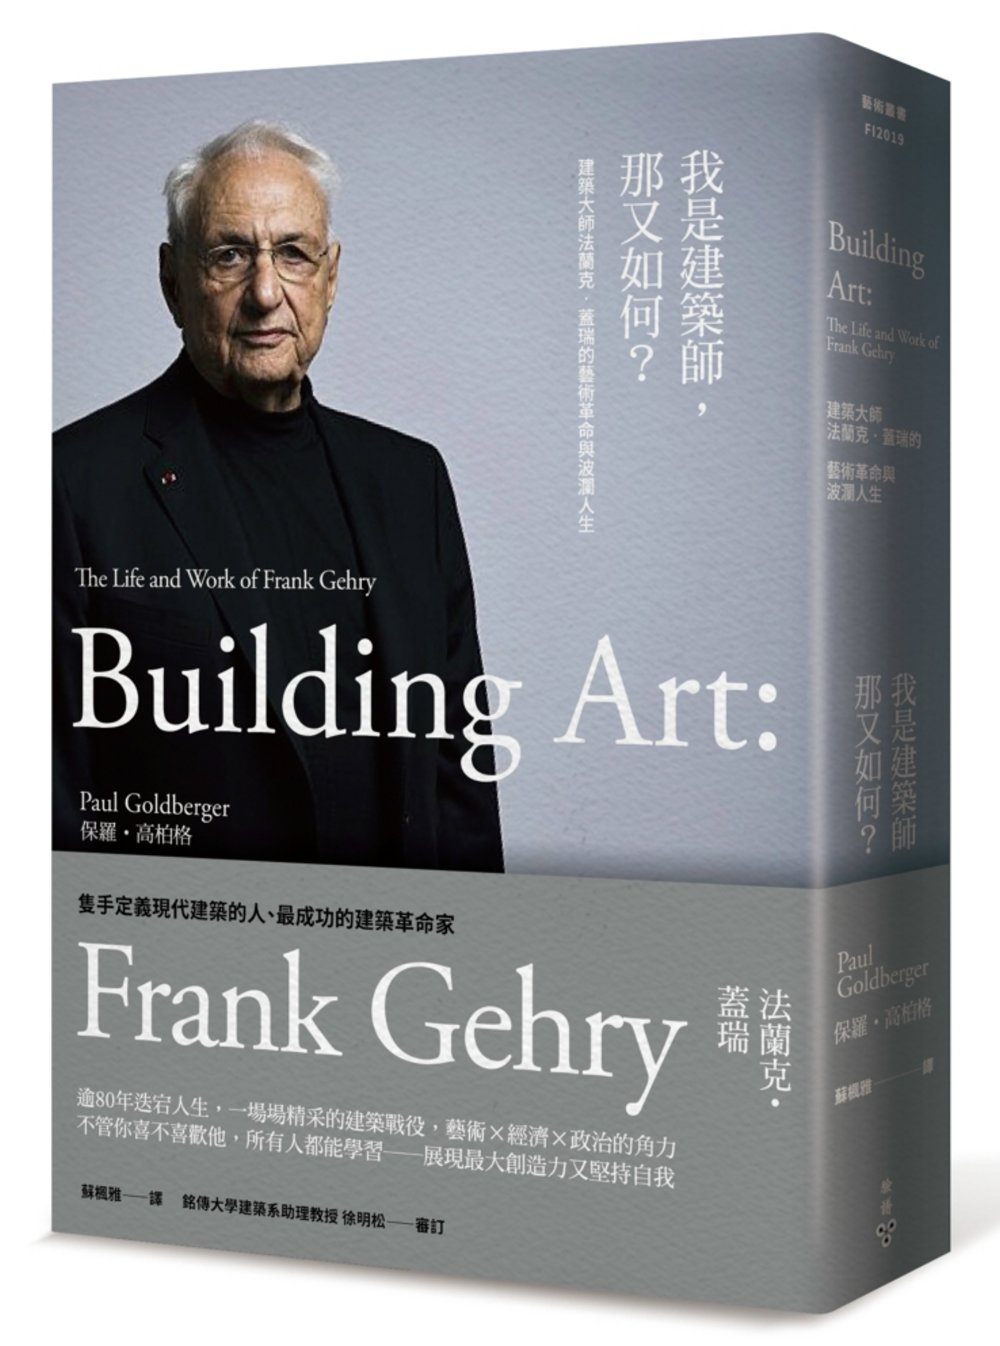 我是建築師，那又如何？：建築大師法蘭克‧蓋瑞的藝術革命與波瀾...